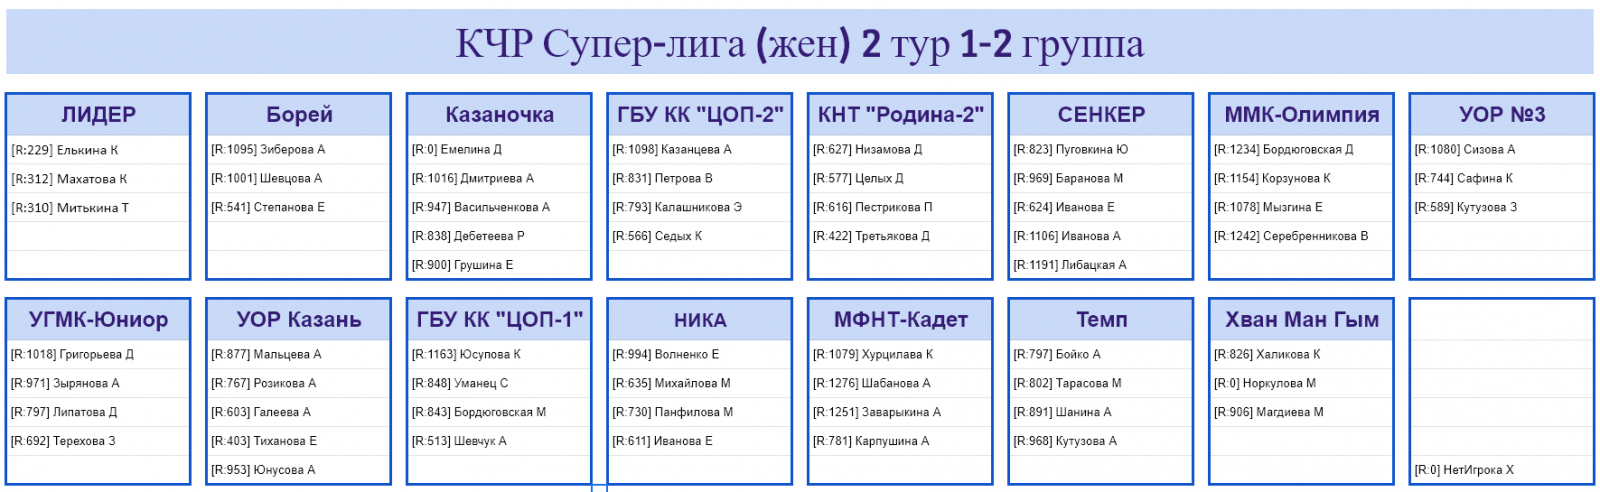 результаты турнира Командный чемпионат ФНТР (жен) Супер-лига (группы 1-2, тур 2)